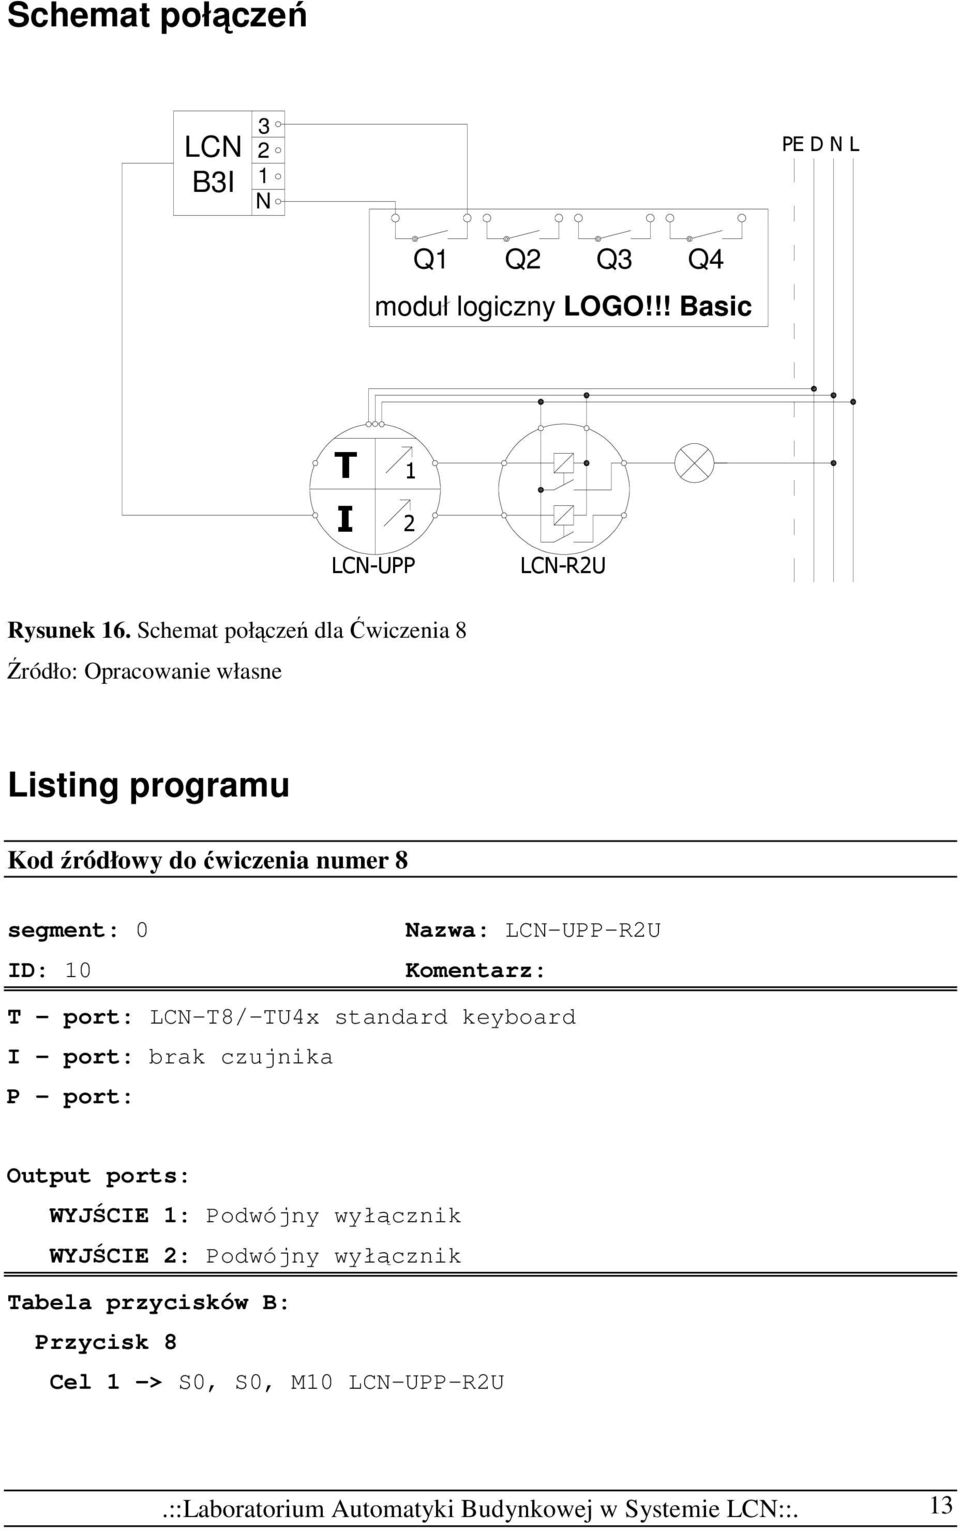 Komentarz: T - port: LCN-T8/-TU4x standard keyboard I - port: brak czujnika P - port: Output ports: WYJŚCIE 1: Podwójny wyłącznik